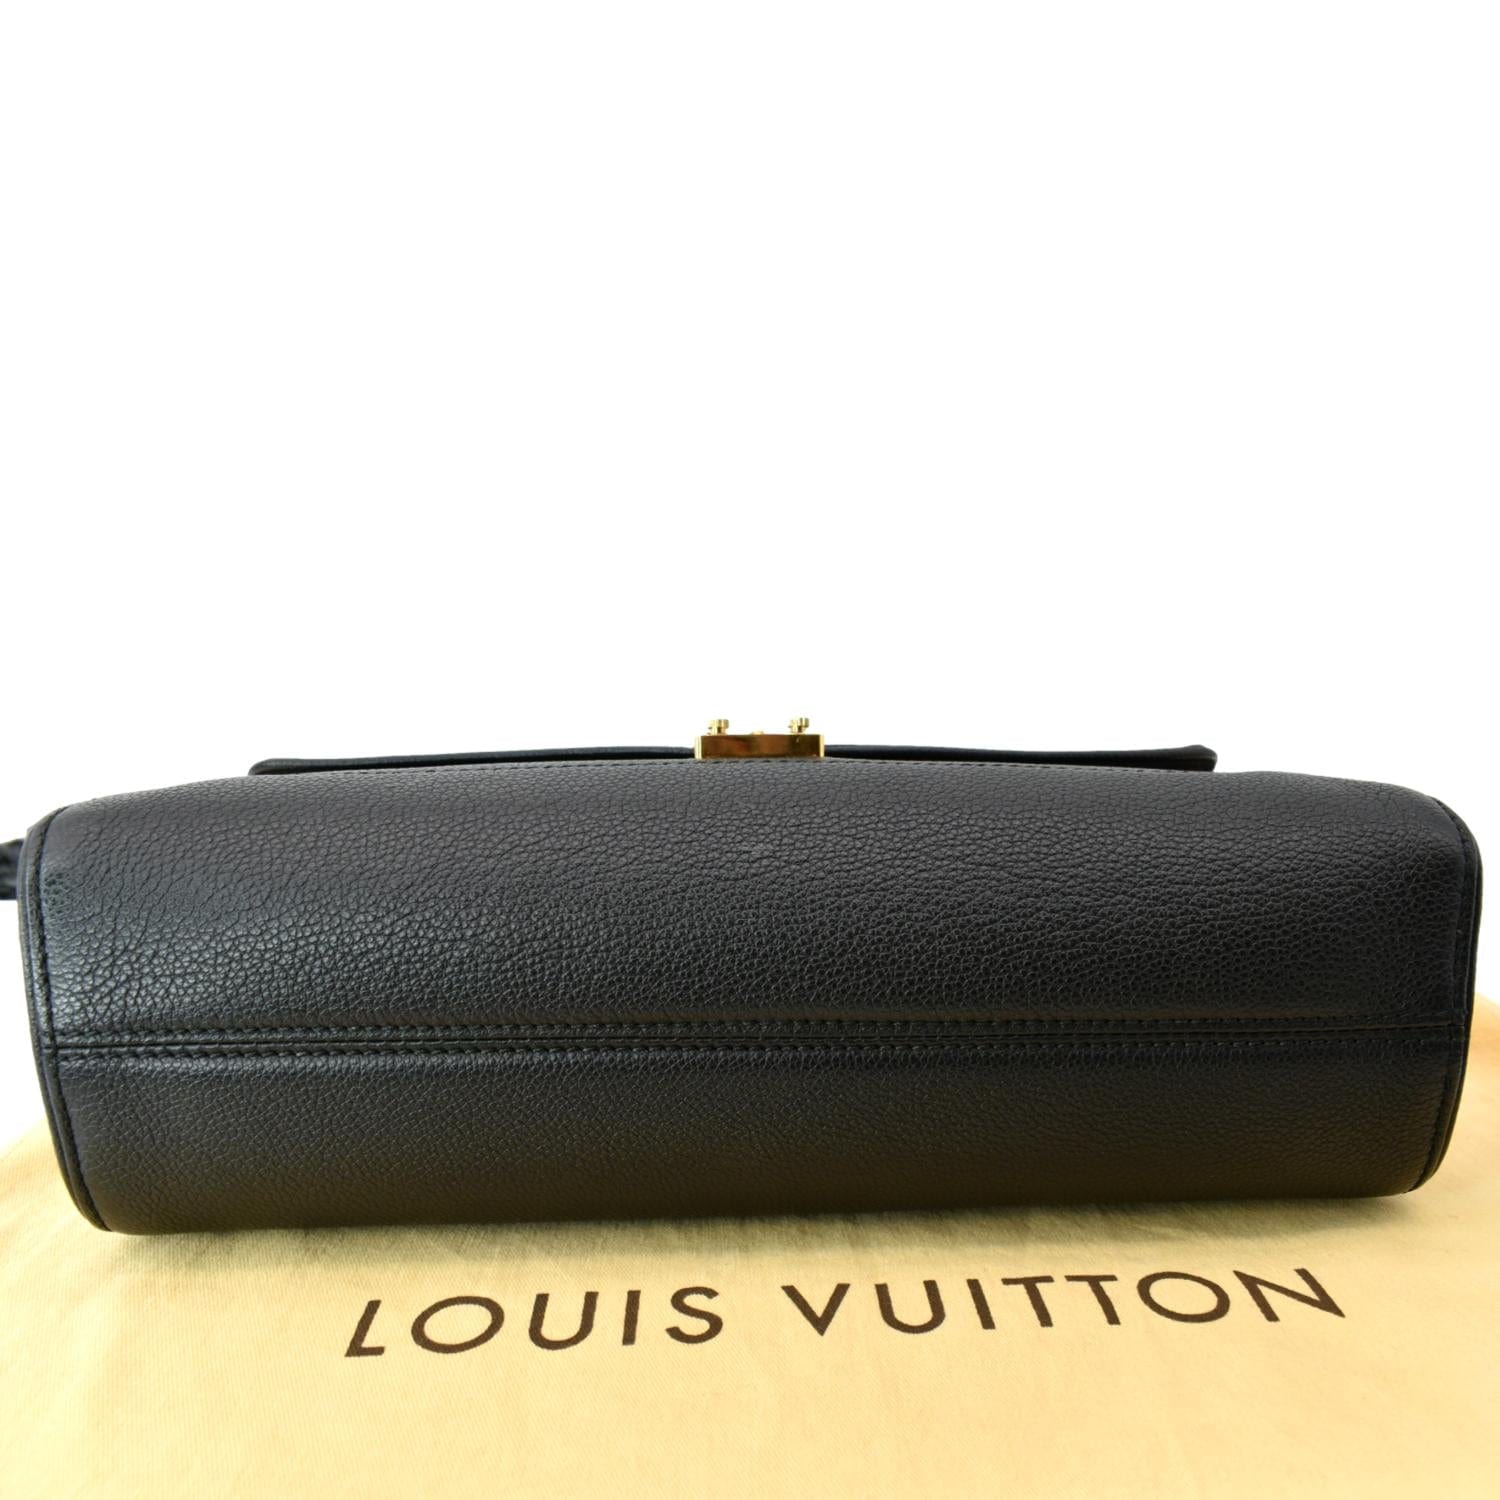 Authentic Louis Vuitton Concorde Vintage Leather Handbag Monogram Logo  Purse 2